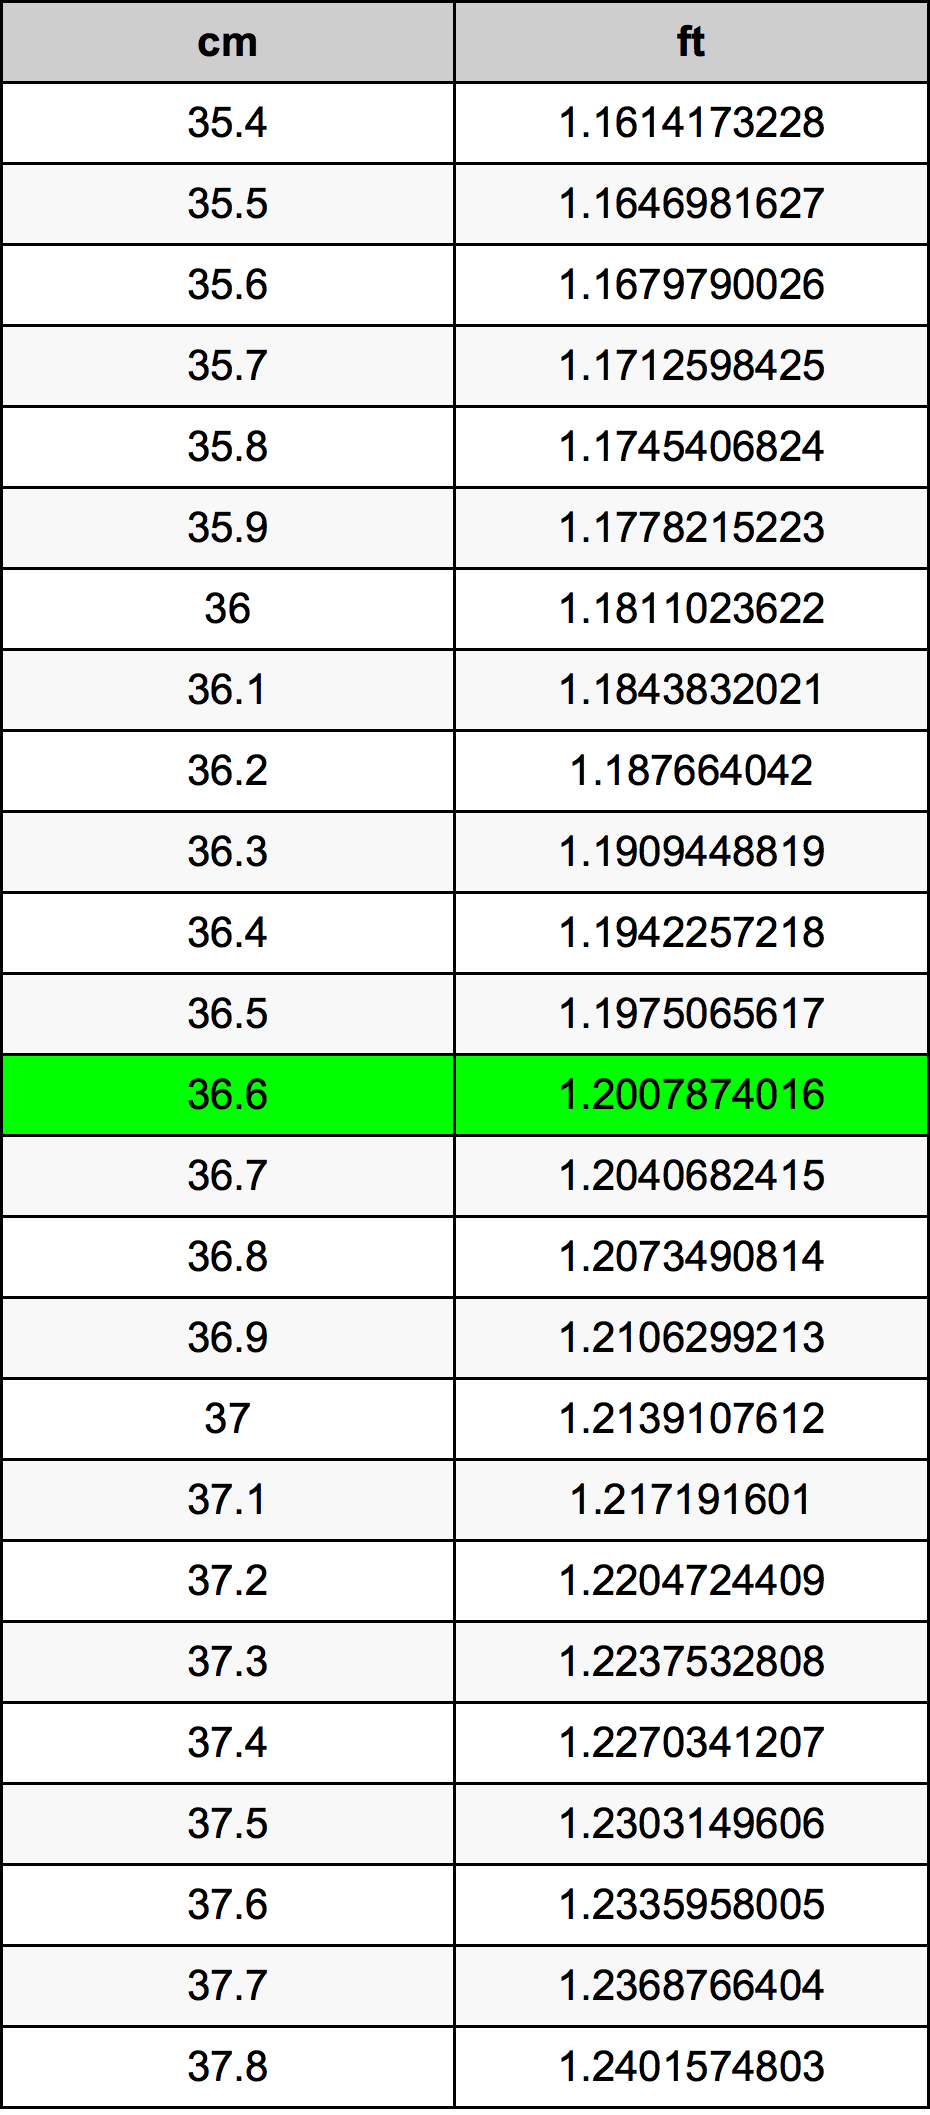 36.6 Centiméter átszámítási táblázat